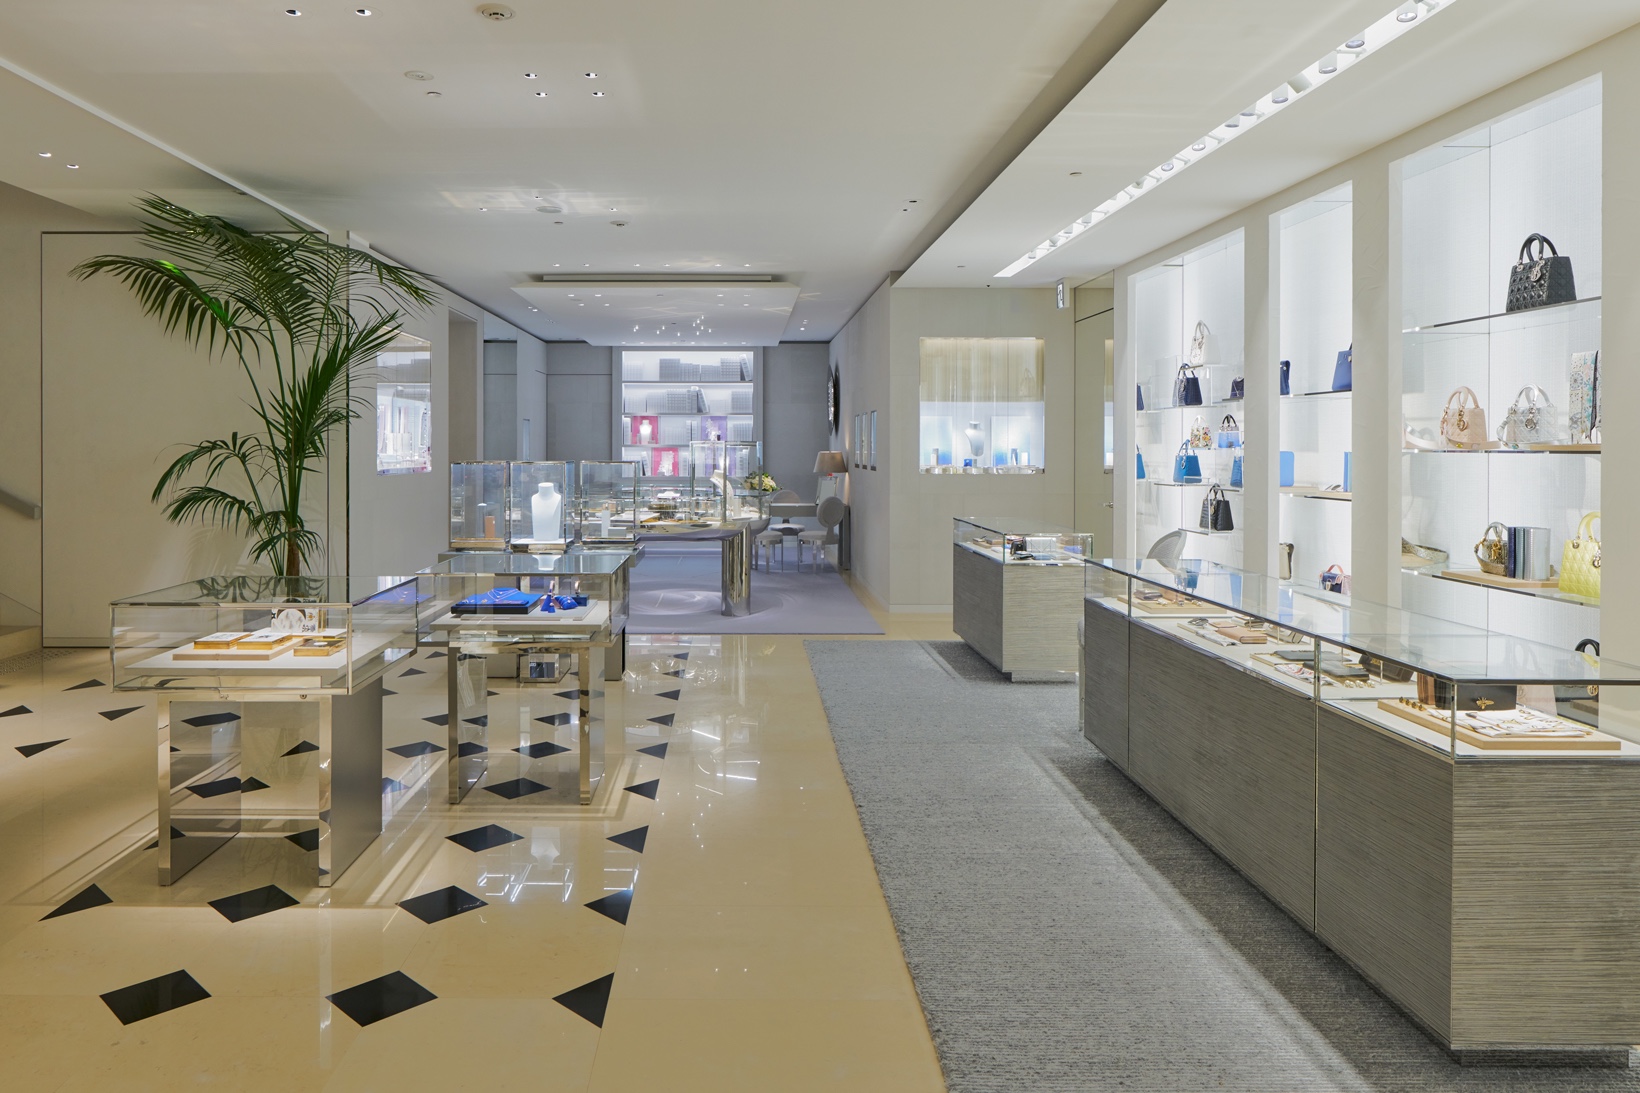 Загляните внутрь нового экстравагантного магазина Dior в Токио